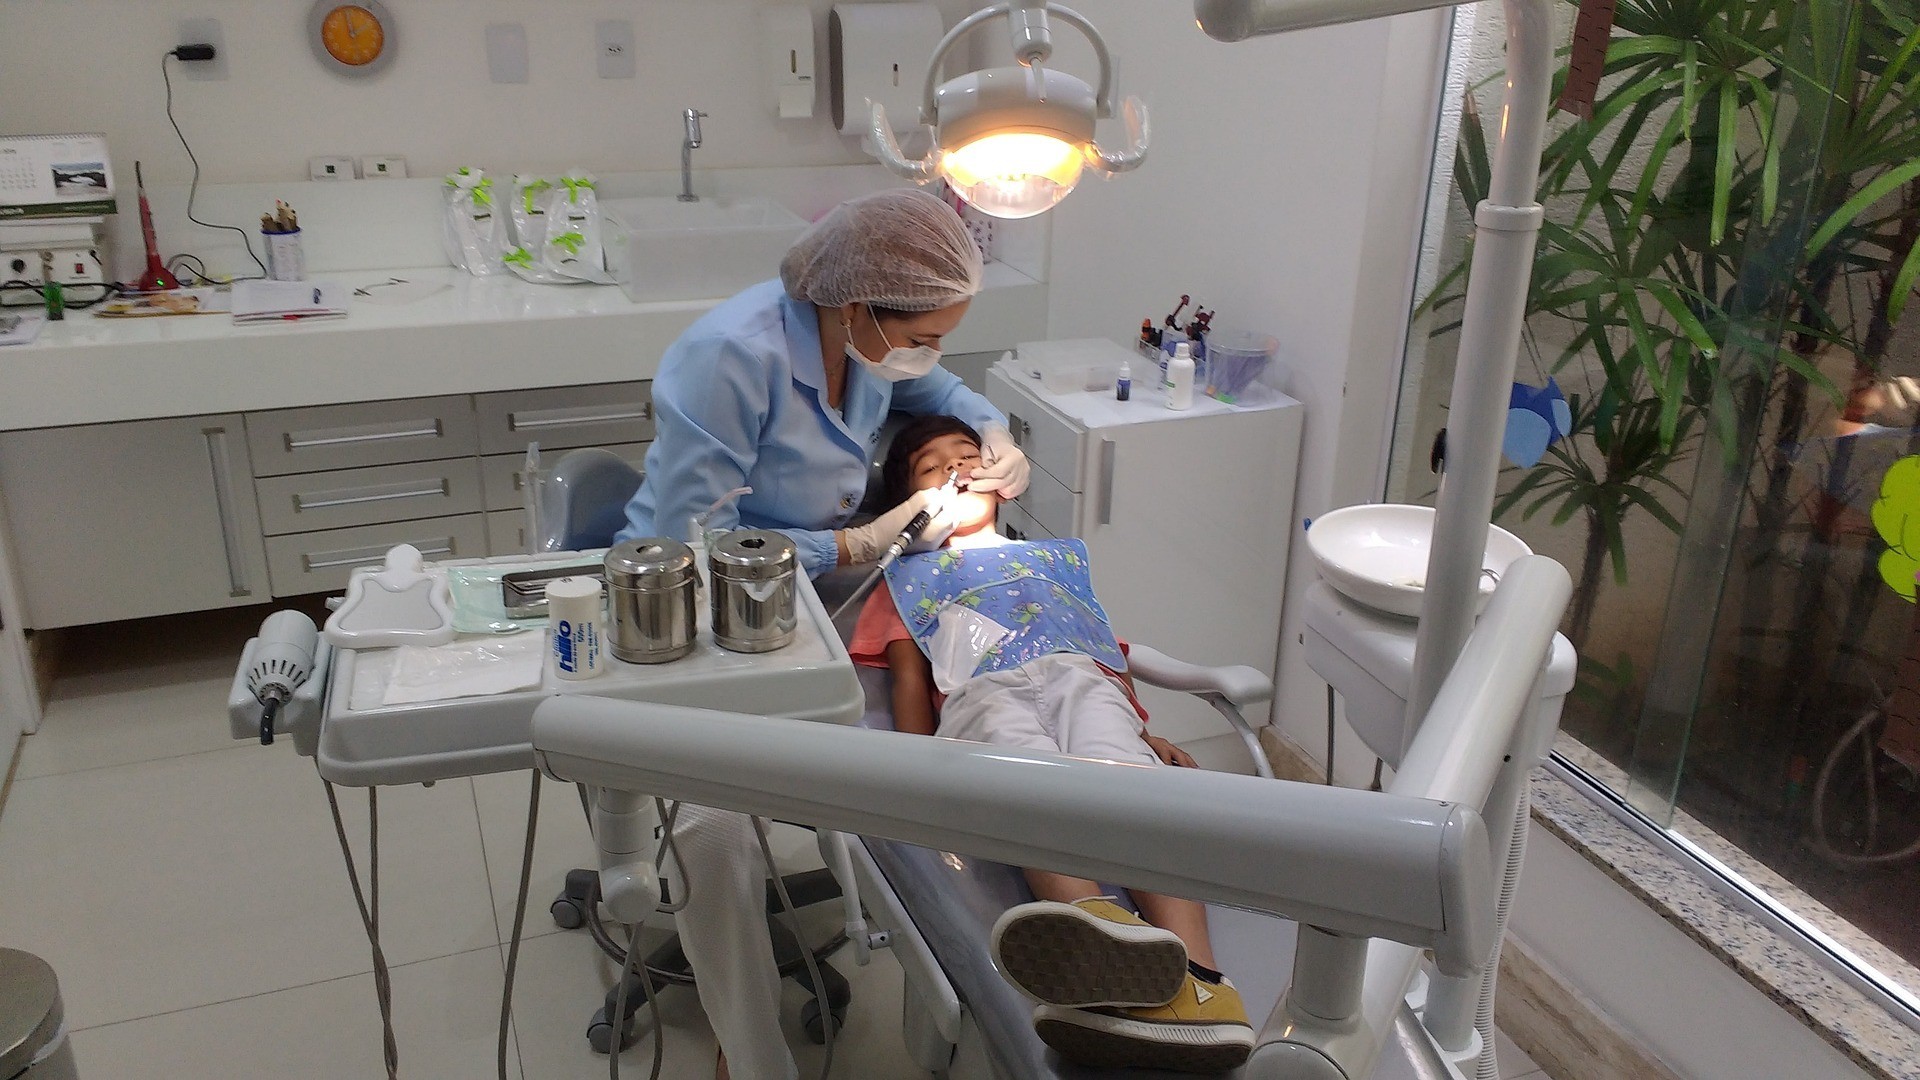 Dentist Pass: Τι πρέπει να ξέρετε για το νέο voucher για δωρεάν οδοντίατρο σε παιδιά